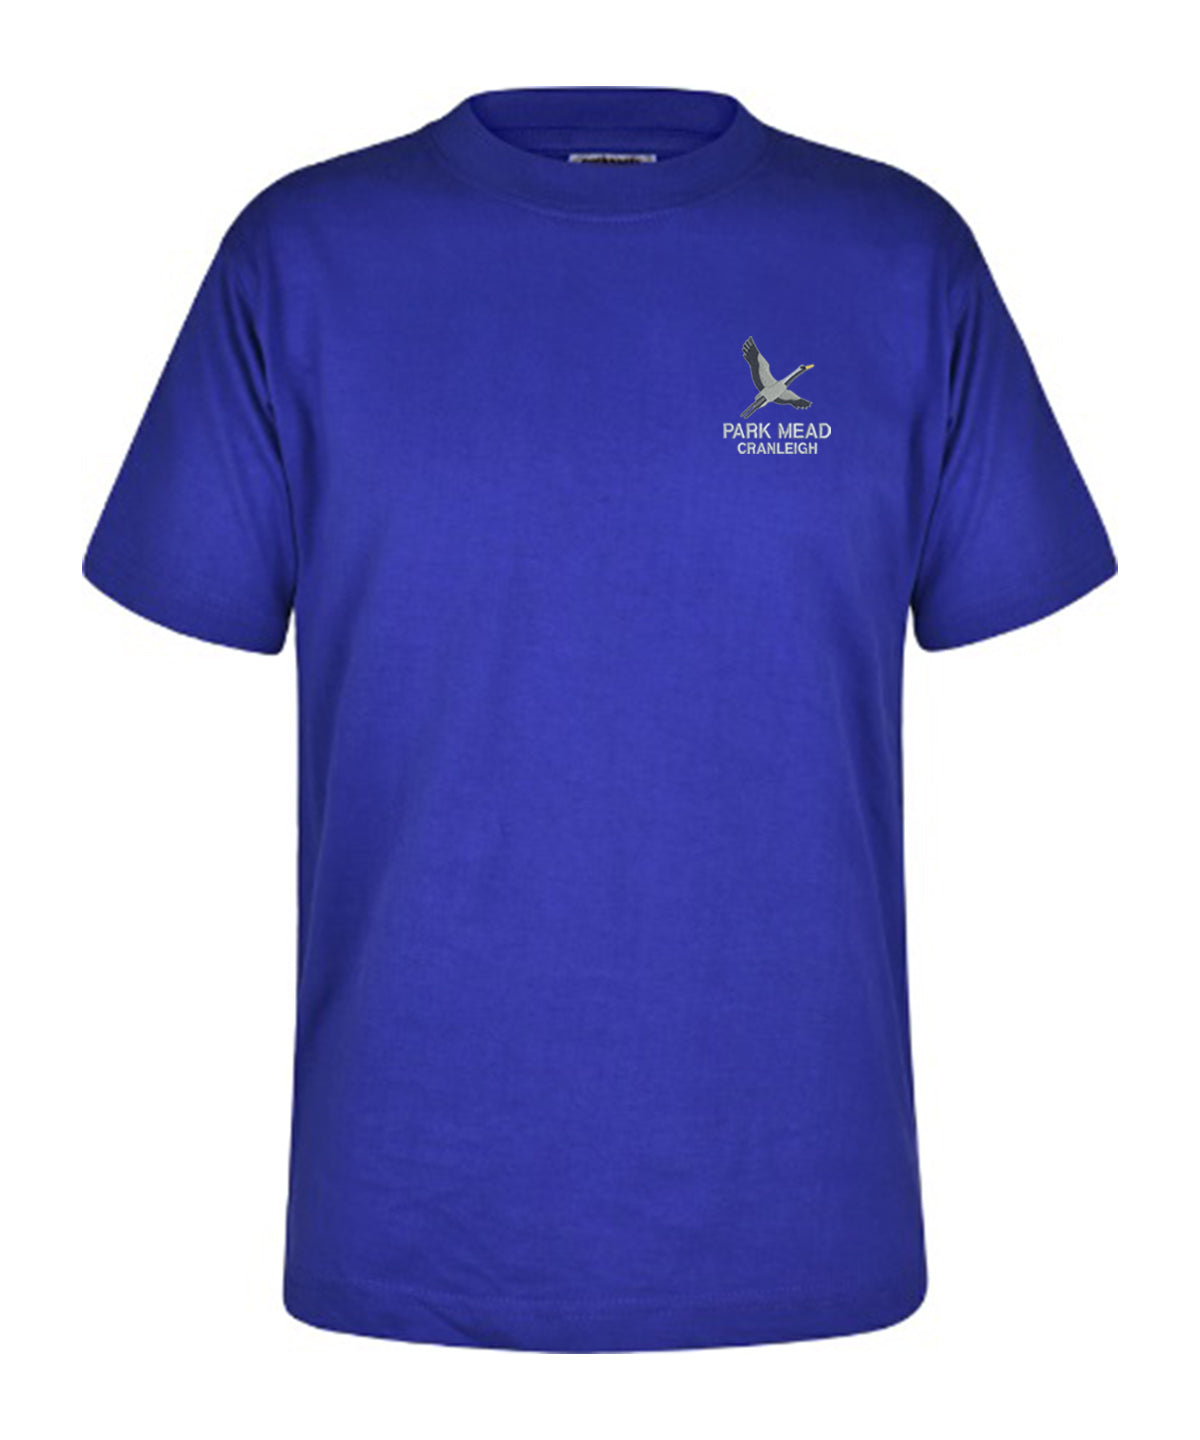 Park Mead Primary School - Unisex Cotton T Shirt - Royal Blue - School Uniform Shop